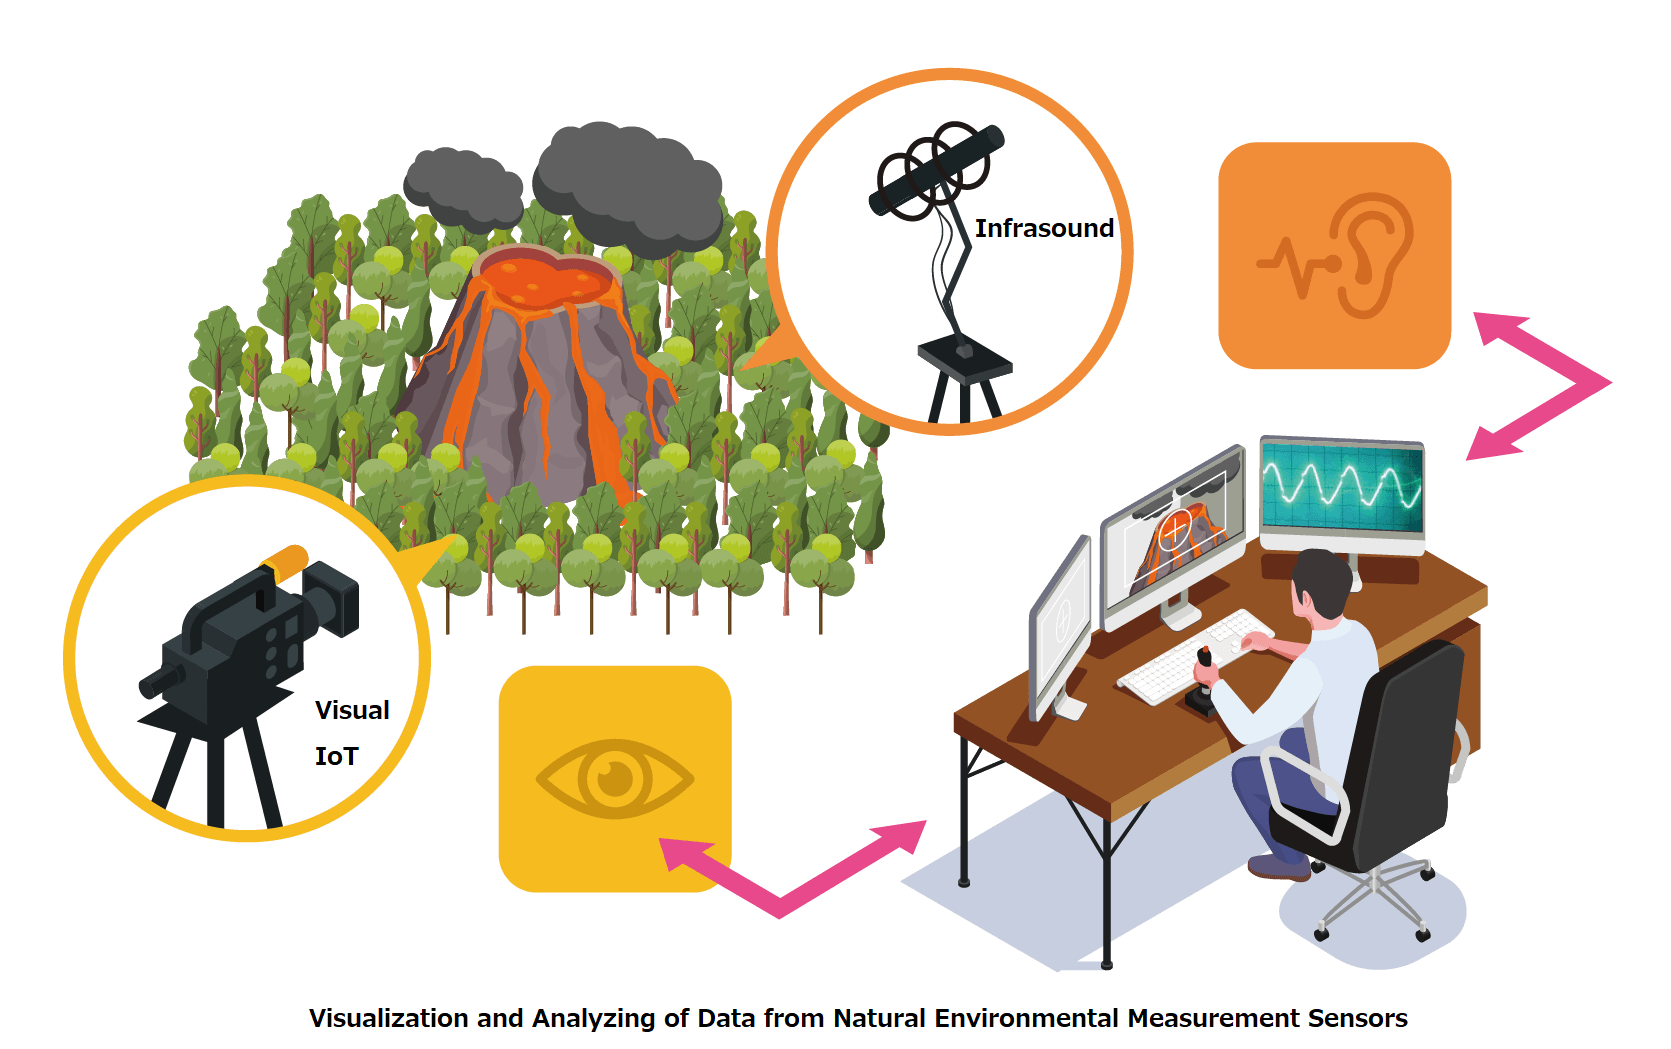 Natural environmental measurement sensors